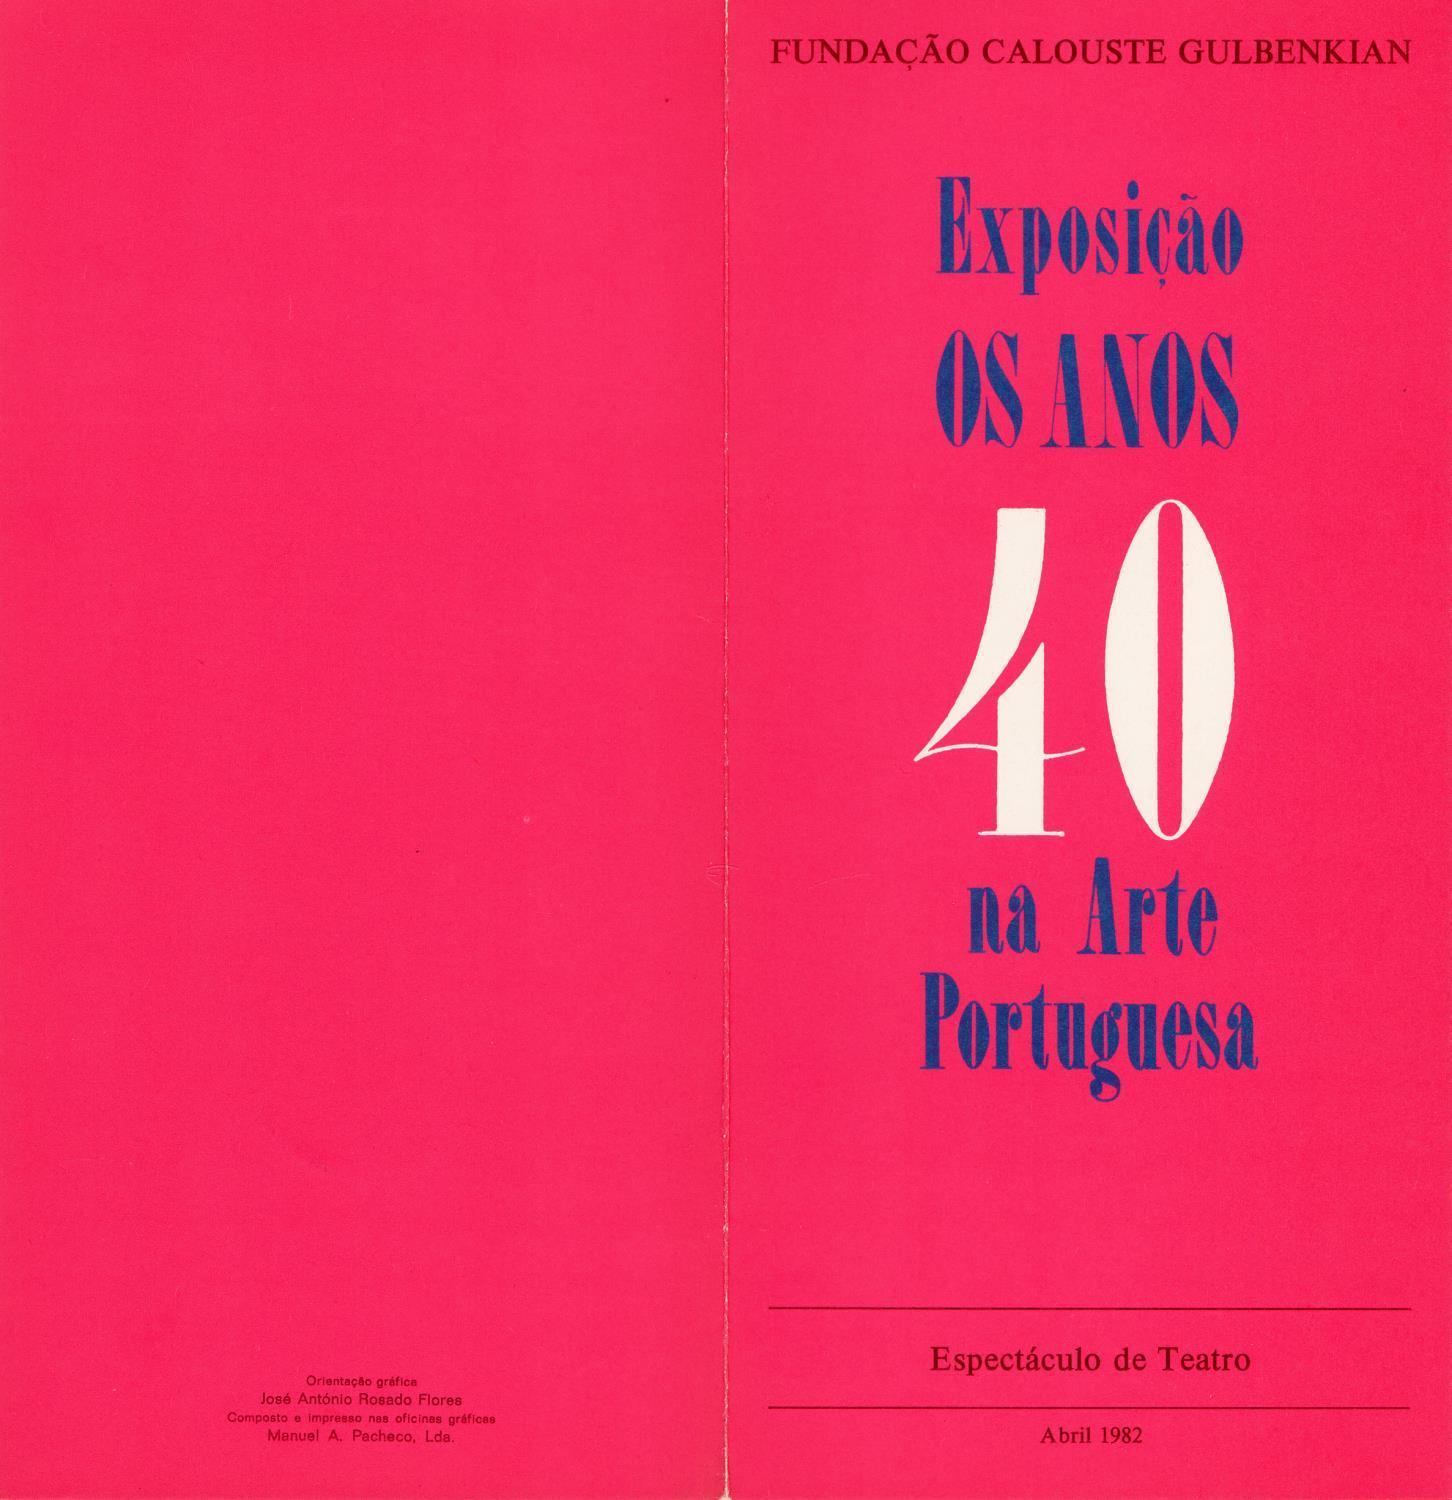 Exposição Os Anos 40 na Arte Portuguesa. Espectáculo de Teatro